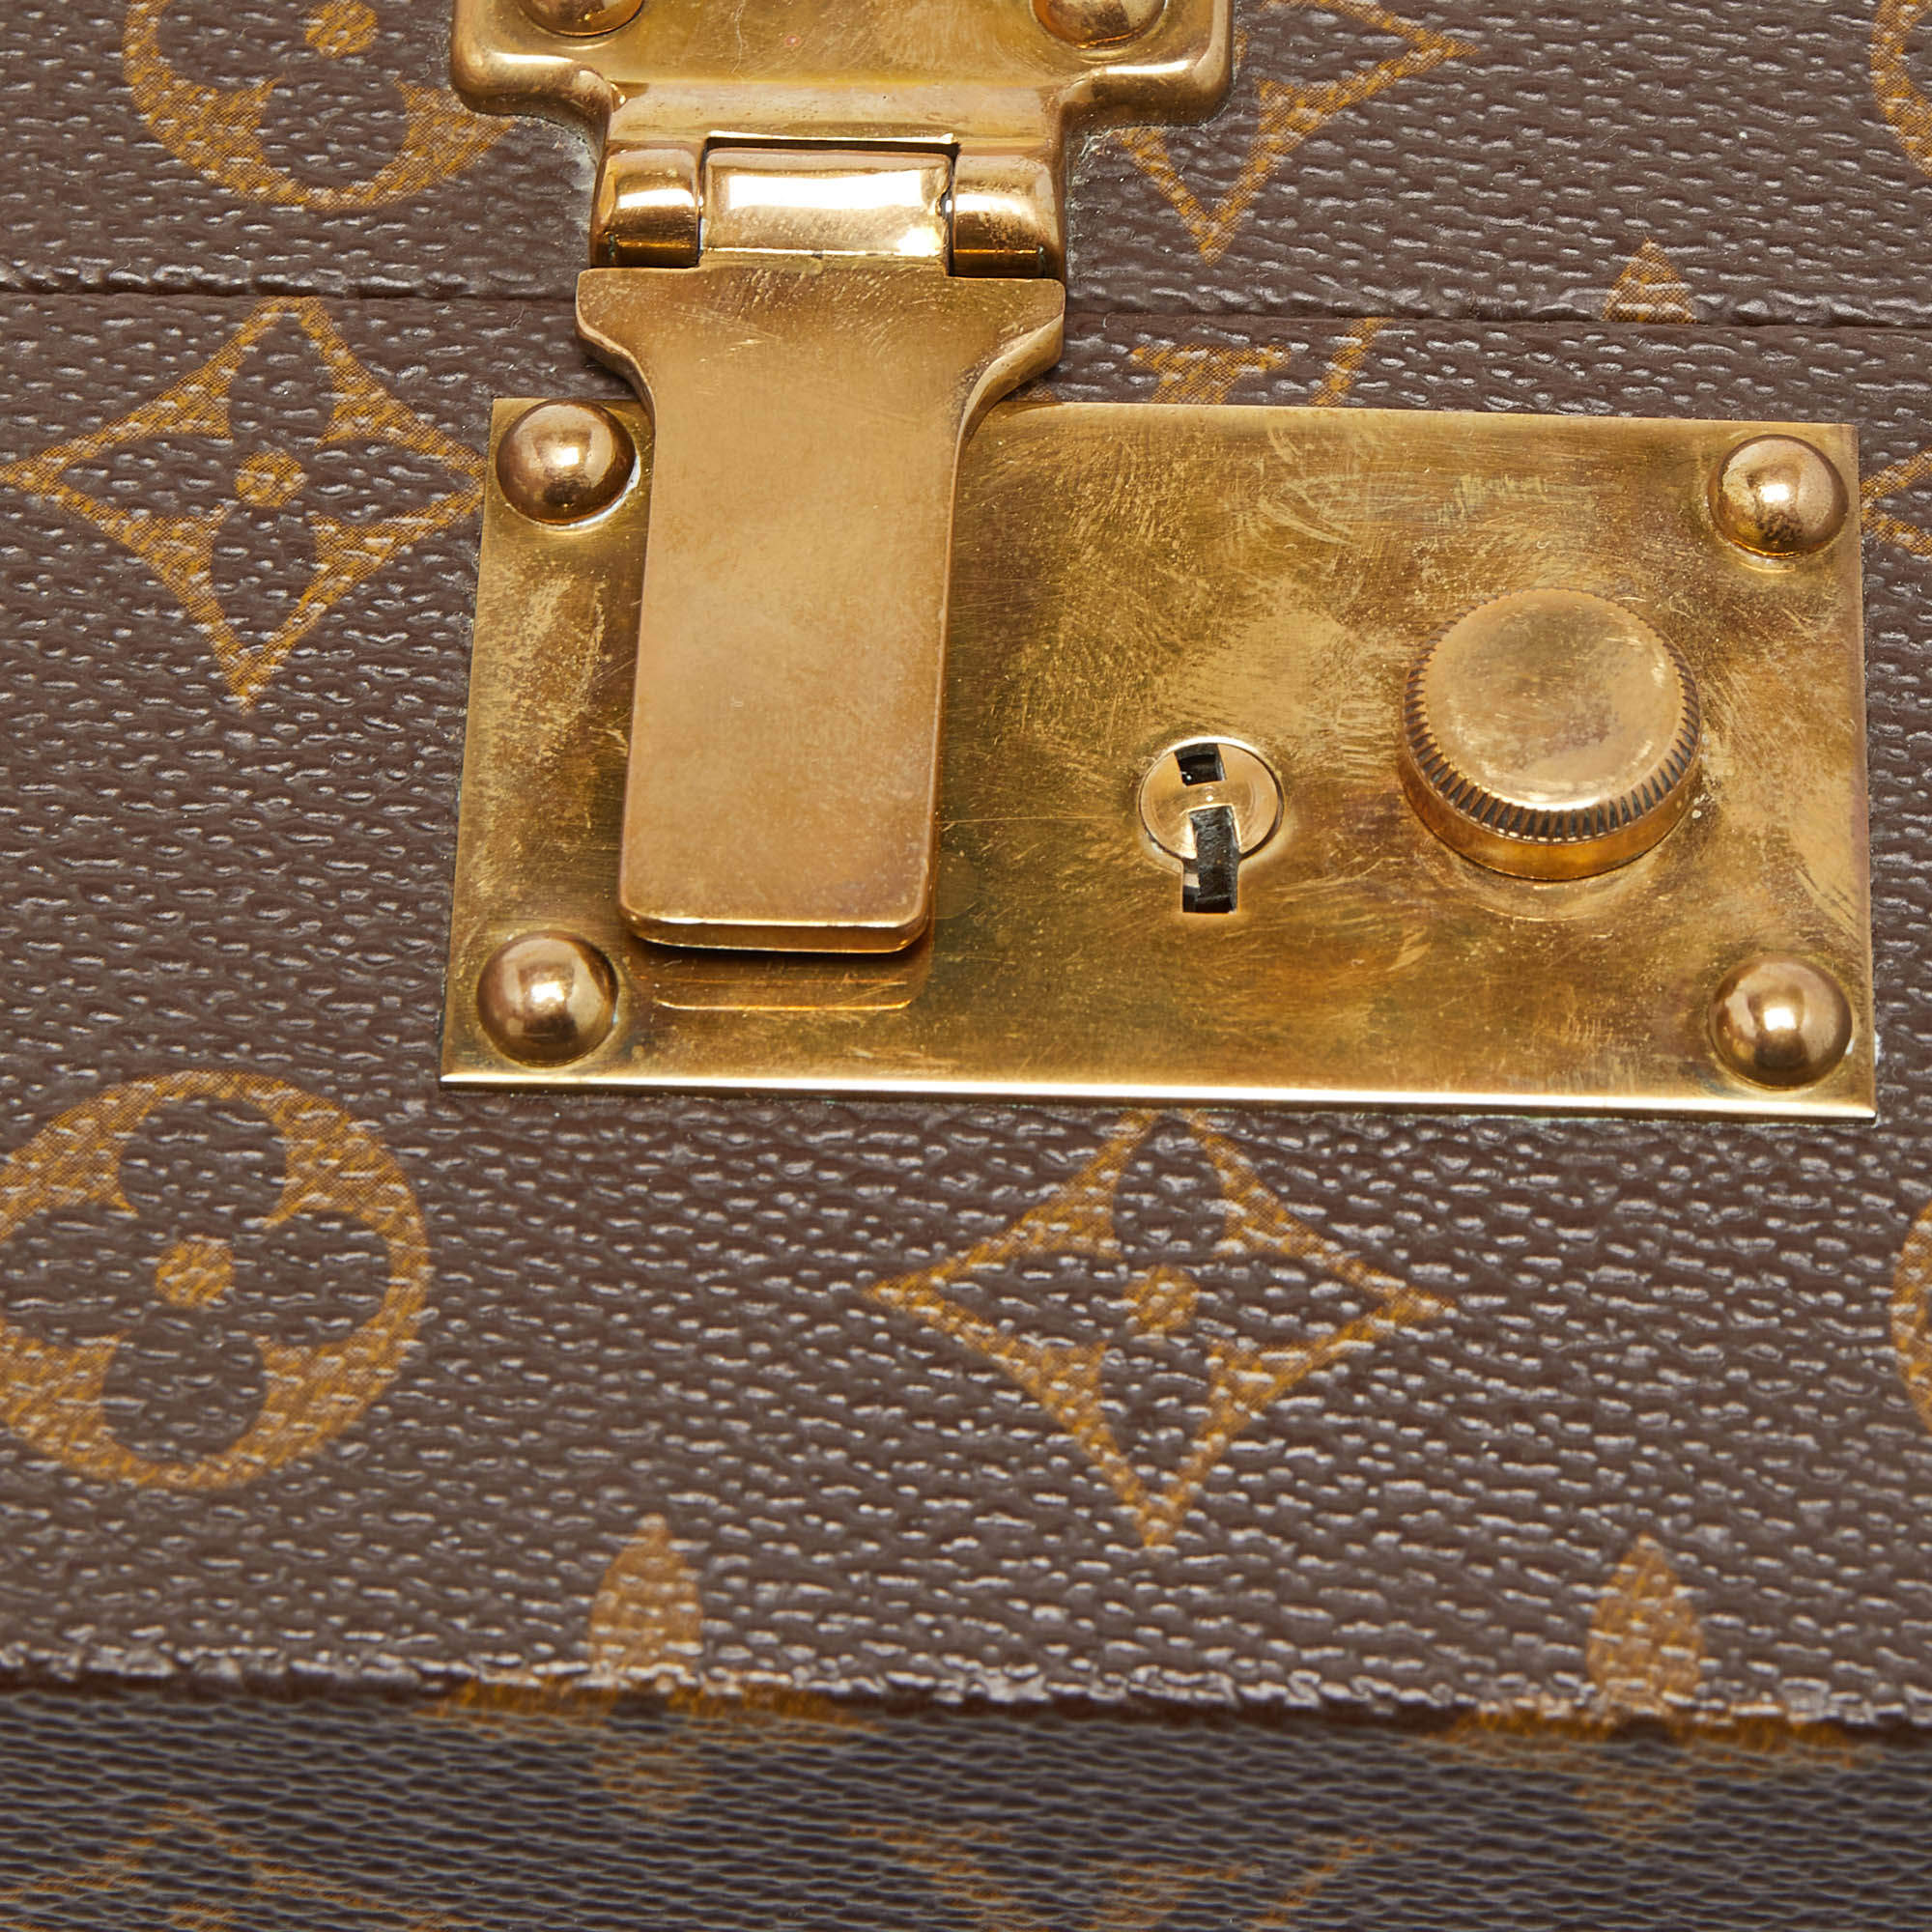 Monogram Boite A Tout Jewelry Hard Case, Louis Vuitton (Lot 136